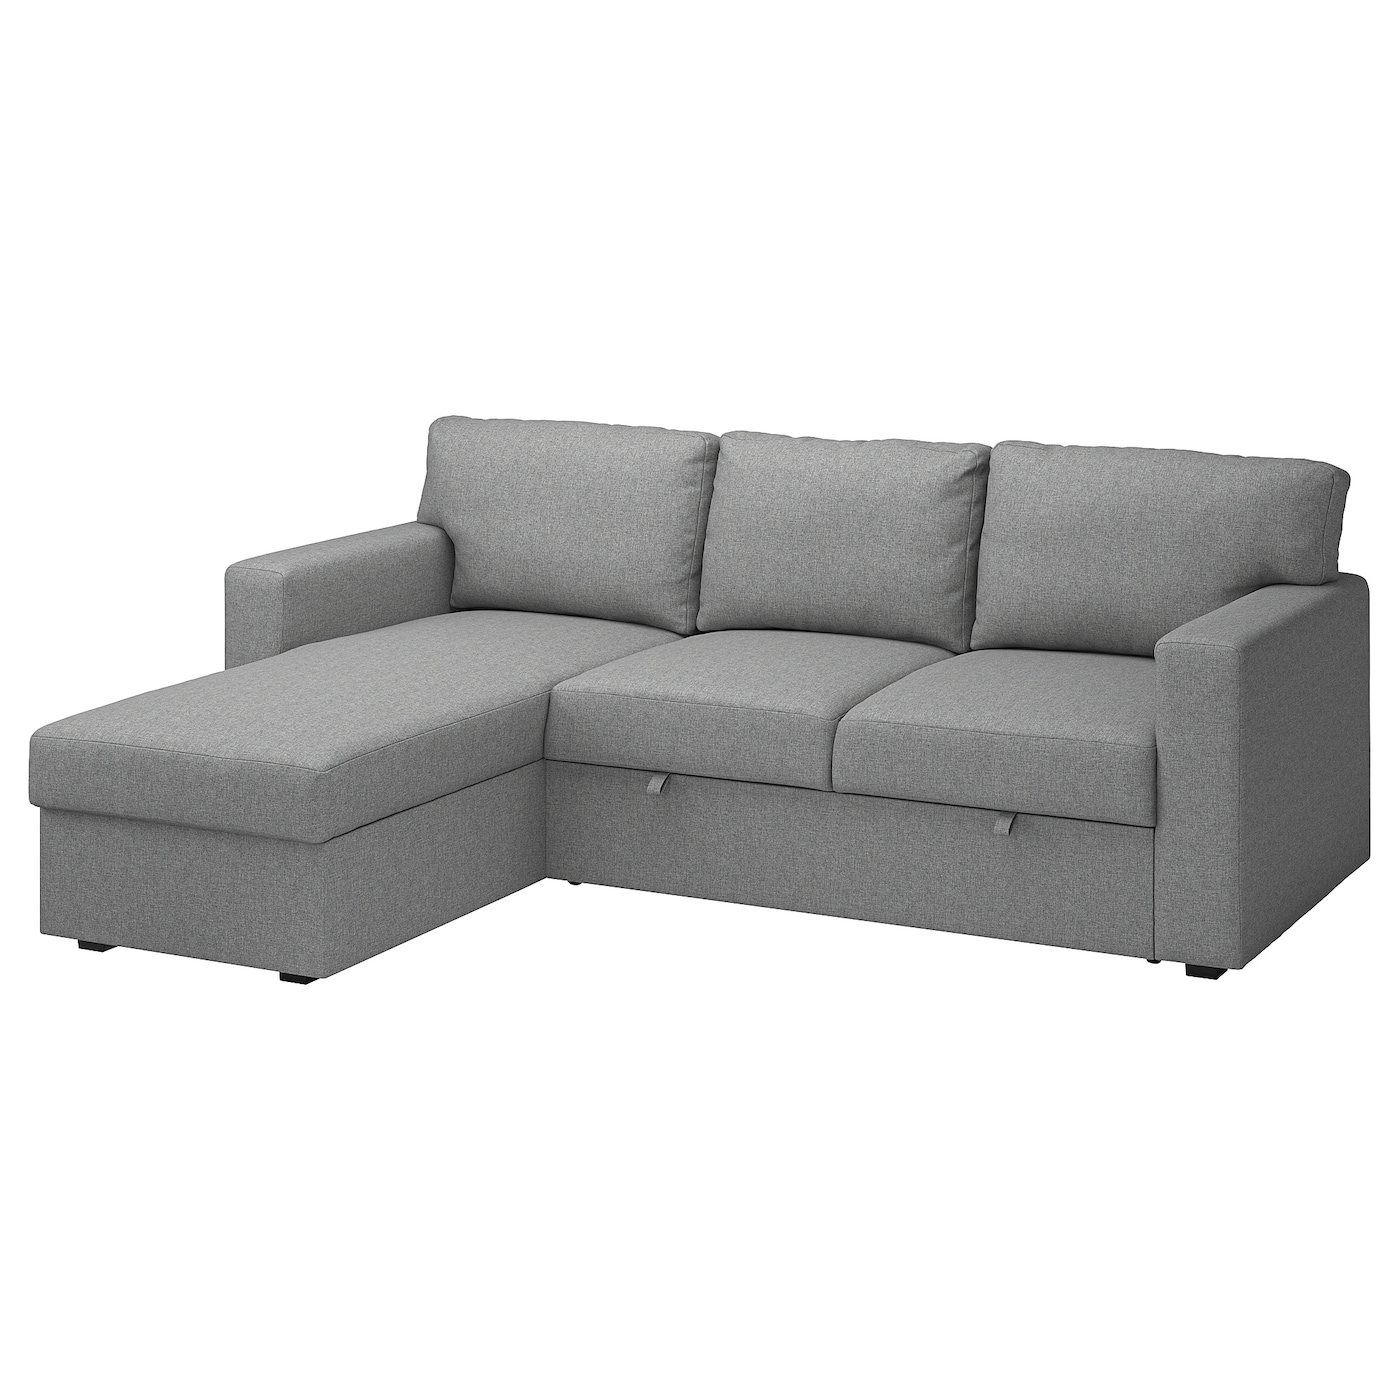 БОРСЛОВ 3-местный диван-кровать + диван, Тибблби бежевый/серый BÅRSLÖV IKEA диван кровать портленд серый велюр